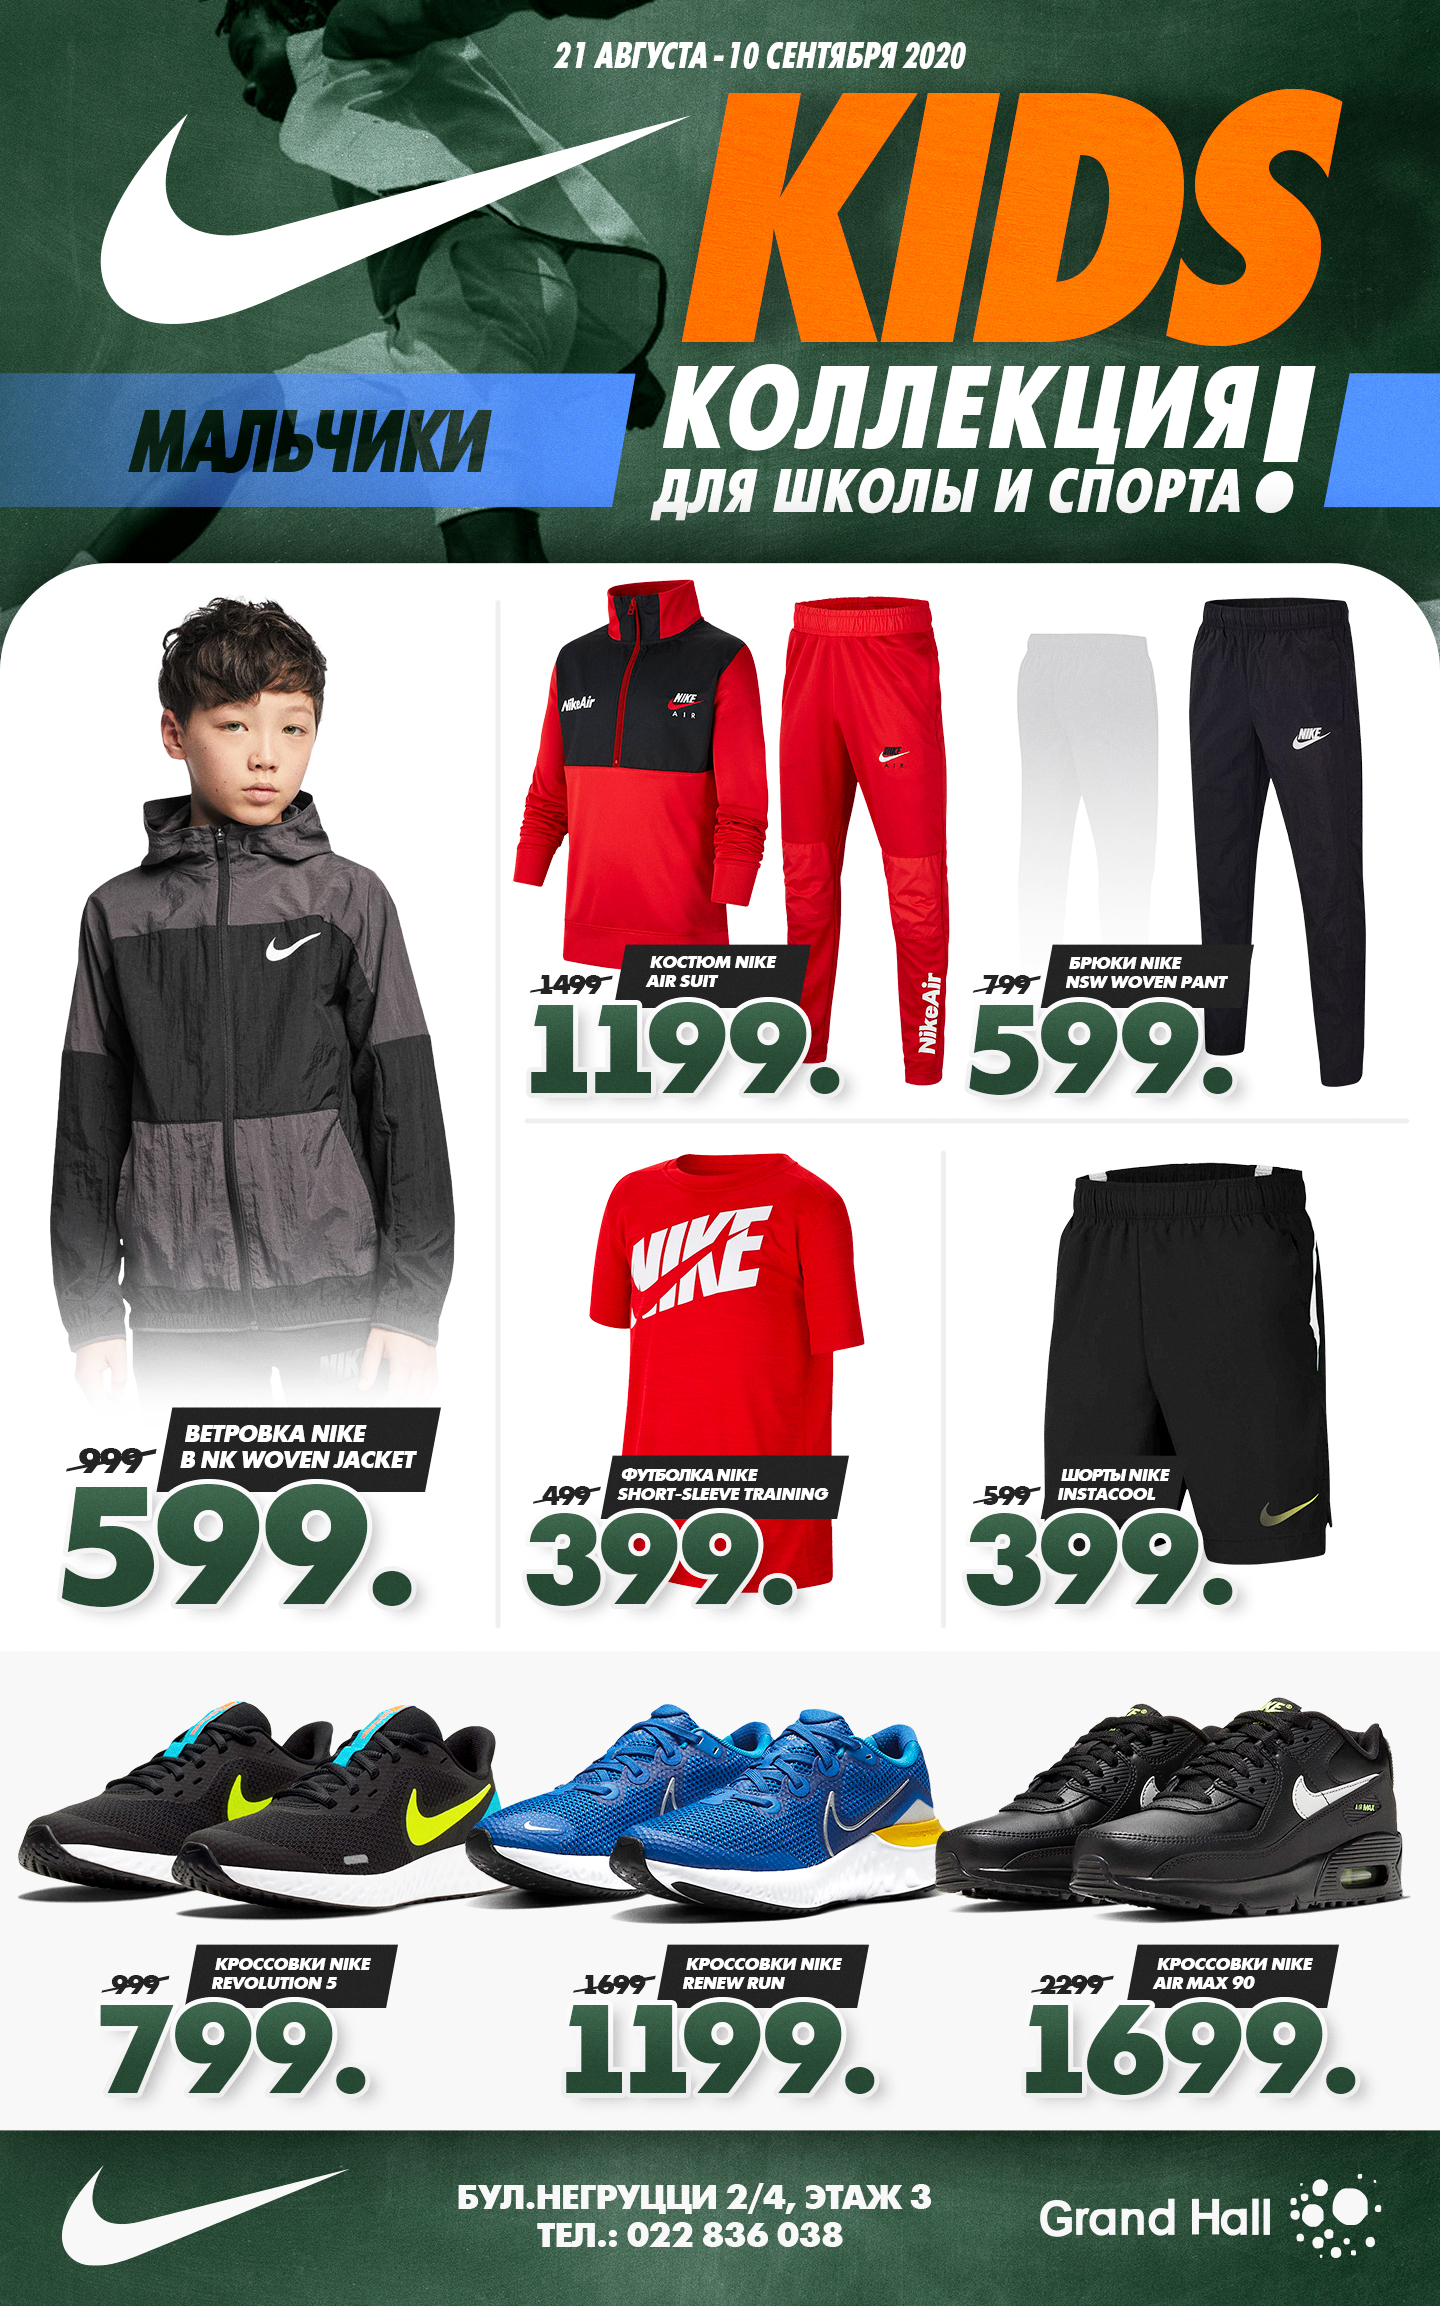 Nike Kids: Colecţia pentru şcoala şi sport